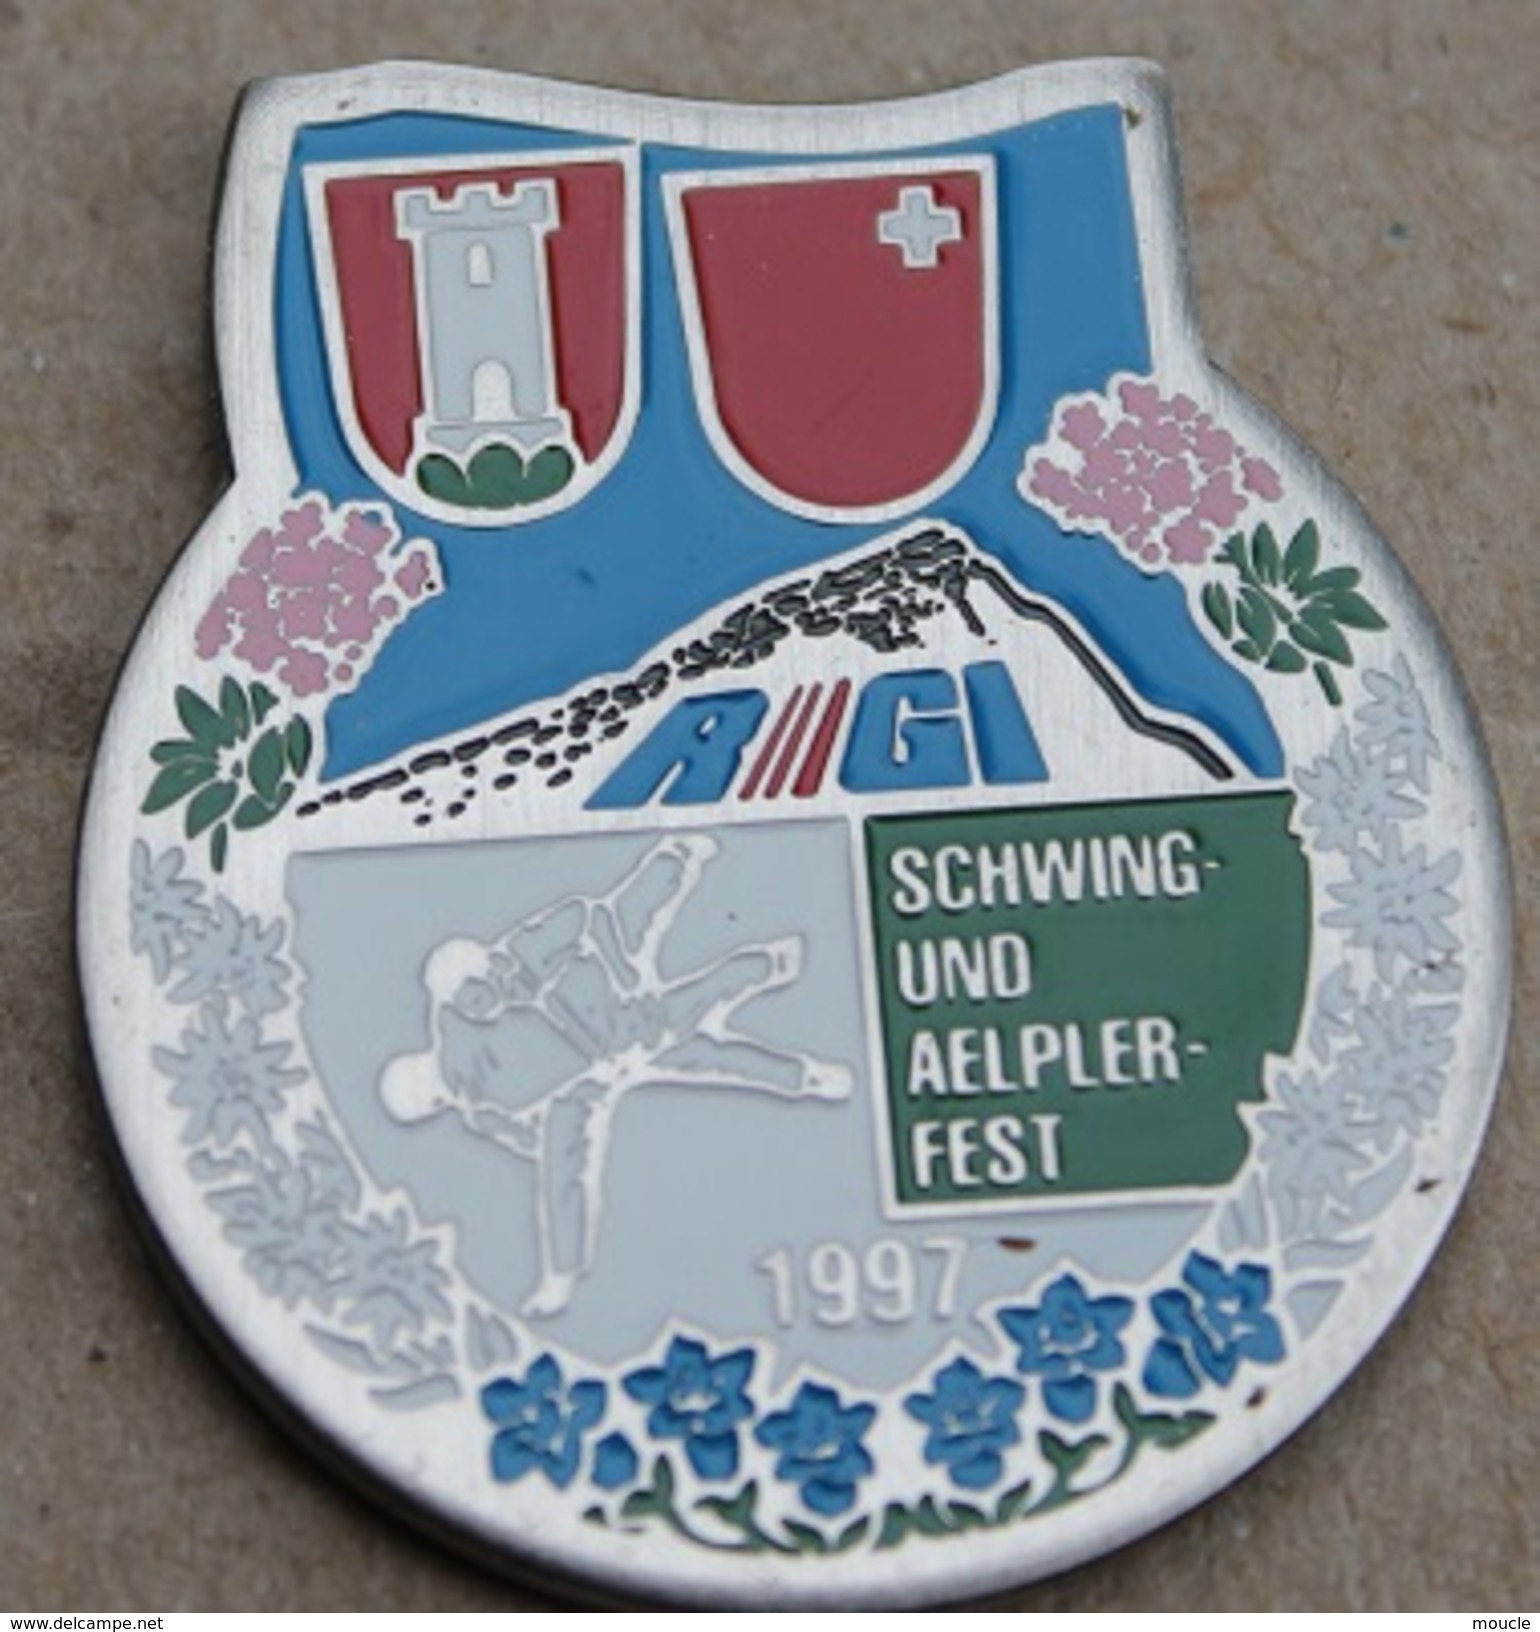 LUTTE SUISSE - SCHWING UND AELPLERFEST 1997 - SUISSE - SCHWEIZ - SWIZTERLAND - RIGI - DRAPEAU CANTON DE SCHWYZ -    (14) - Lutte